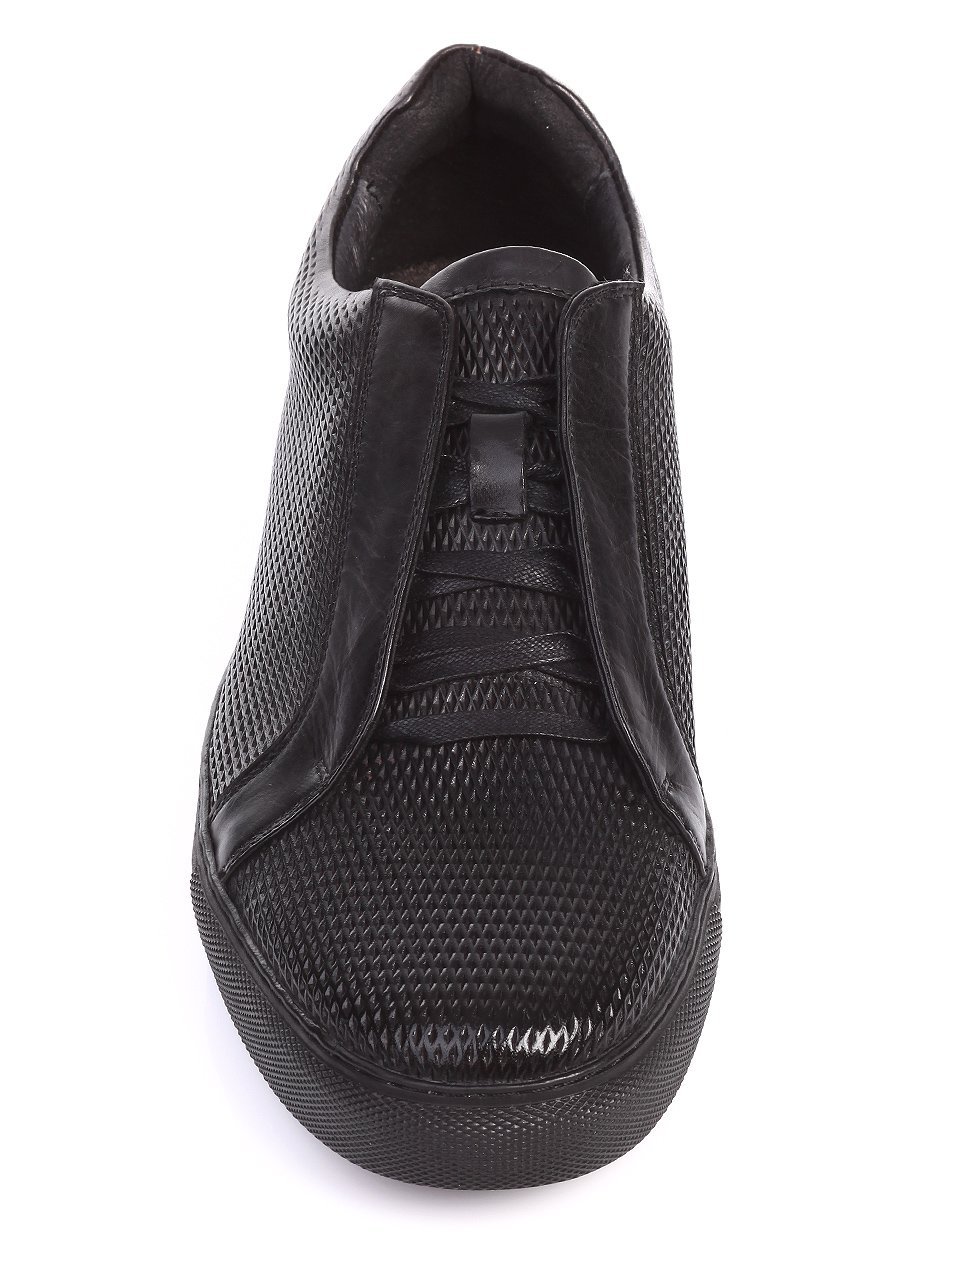 Ежедневни мъжки обувки от естествена кожа в черно 7N-17384 black 